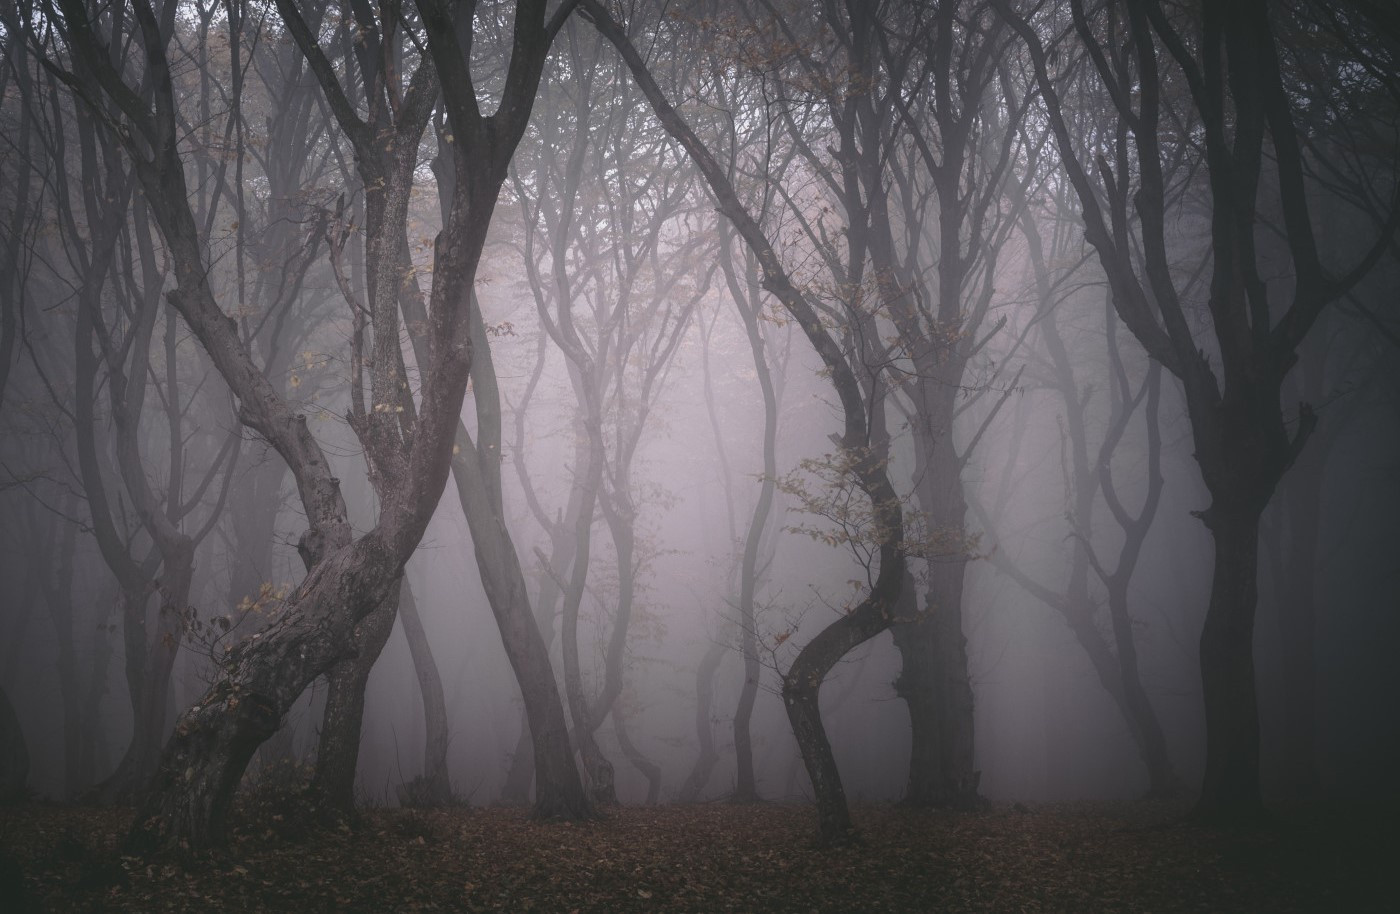 Những hiện tượng siêu nhiên trong khu rừng “Tam giác quỷ” nổi tiếng ở châu Âu - 7